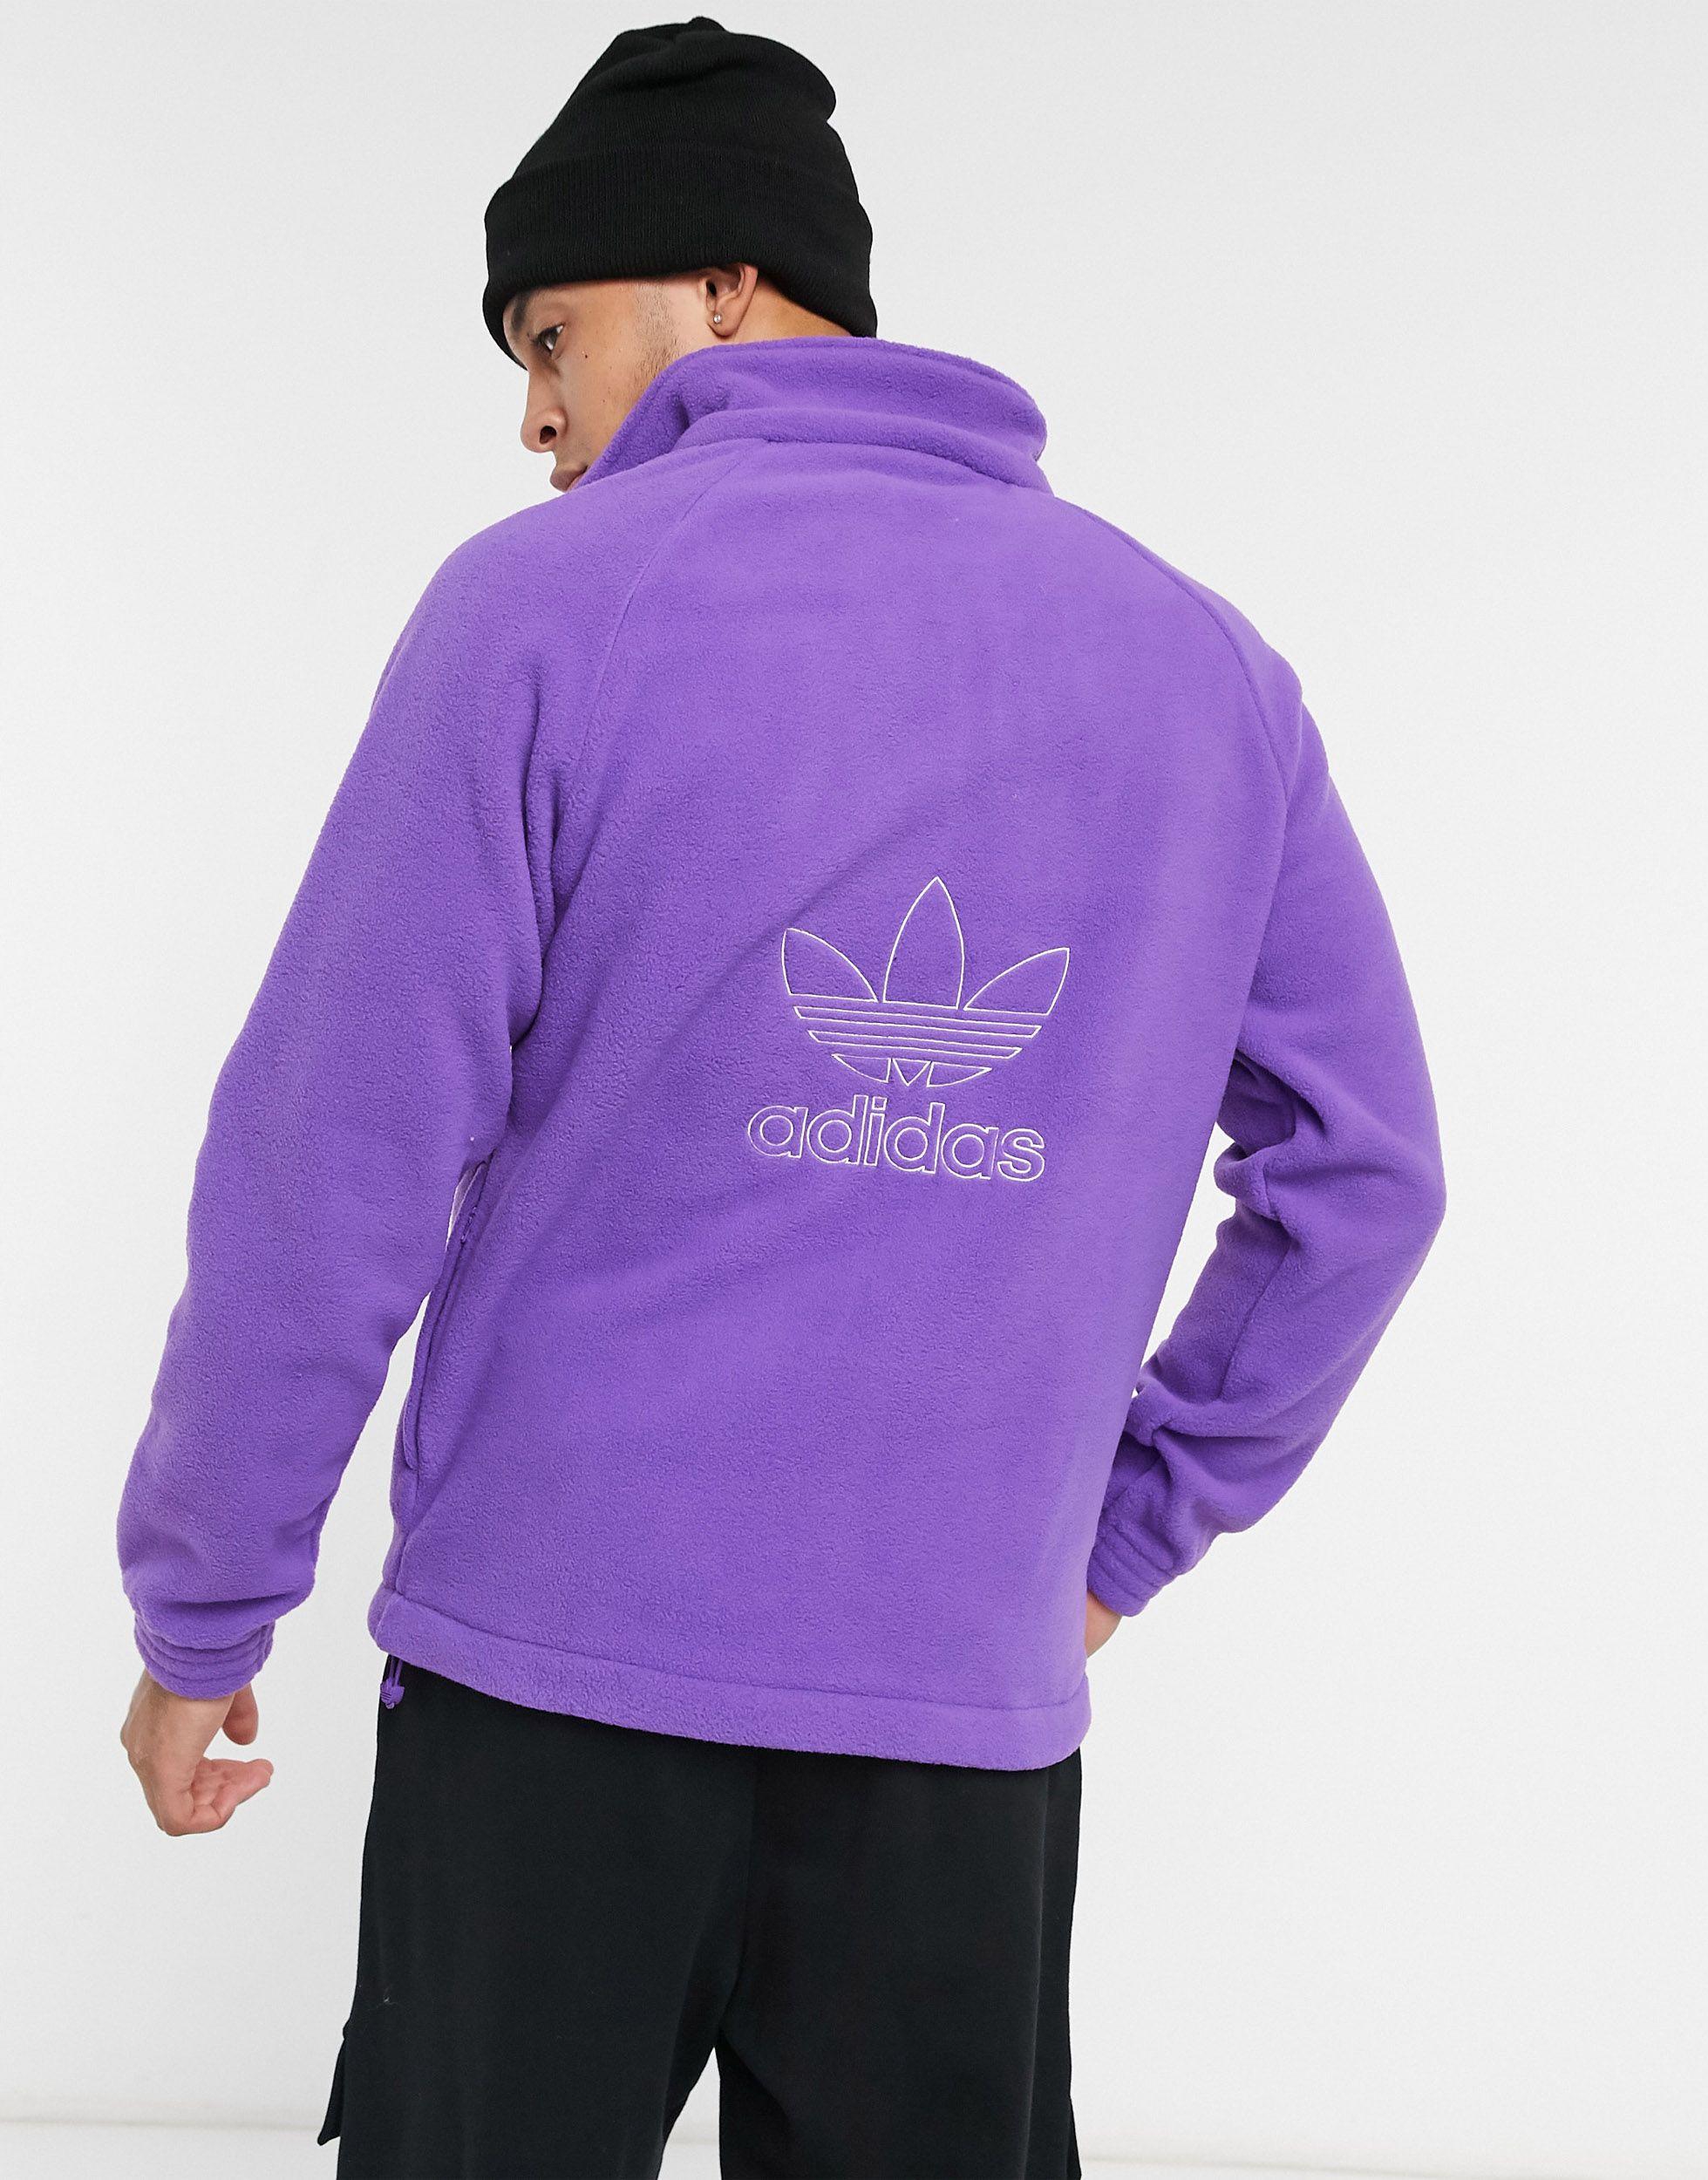 adidas Originals 1/4 Zip Fleece in White (Purple) for Men - Lyst